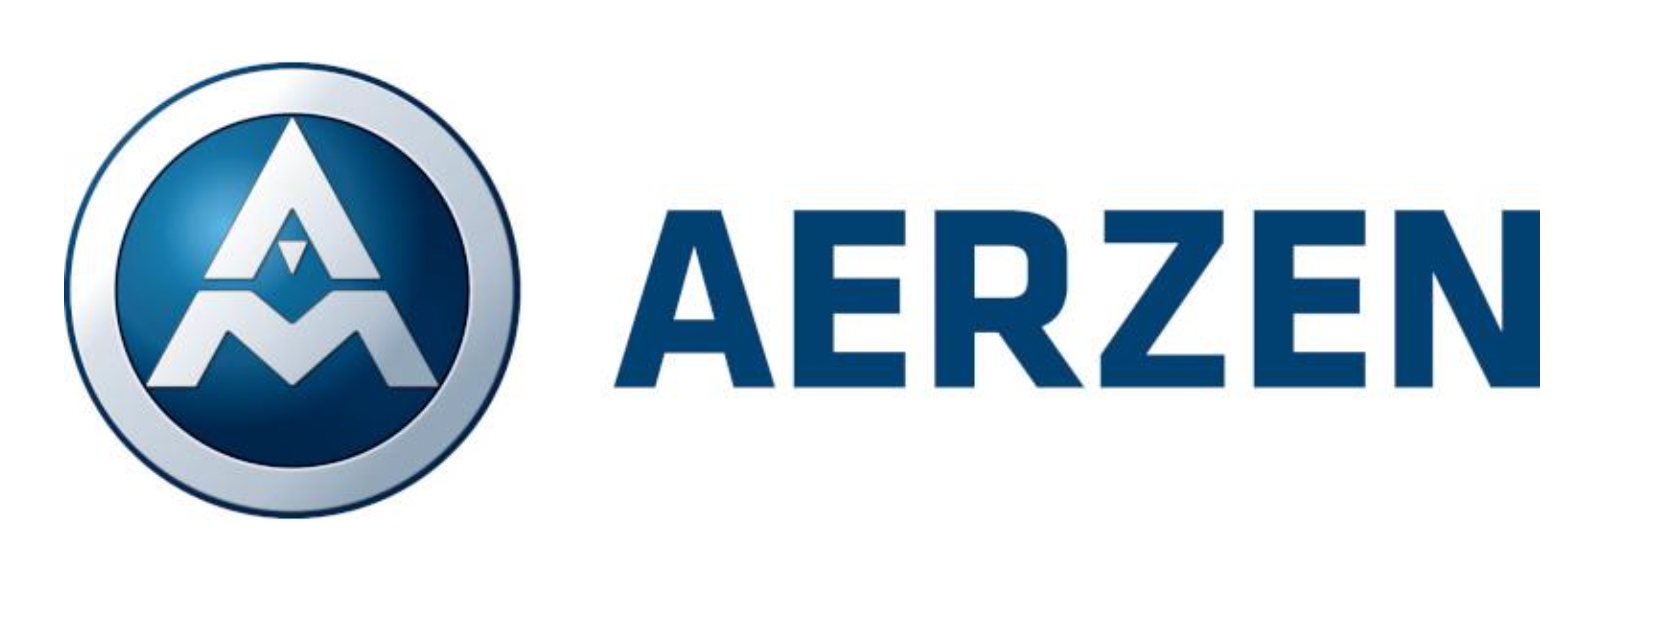 Aerzen USA Acquires Aquarius Technologies